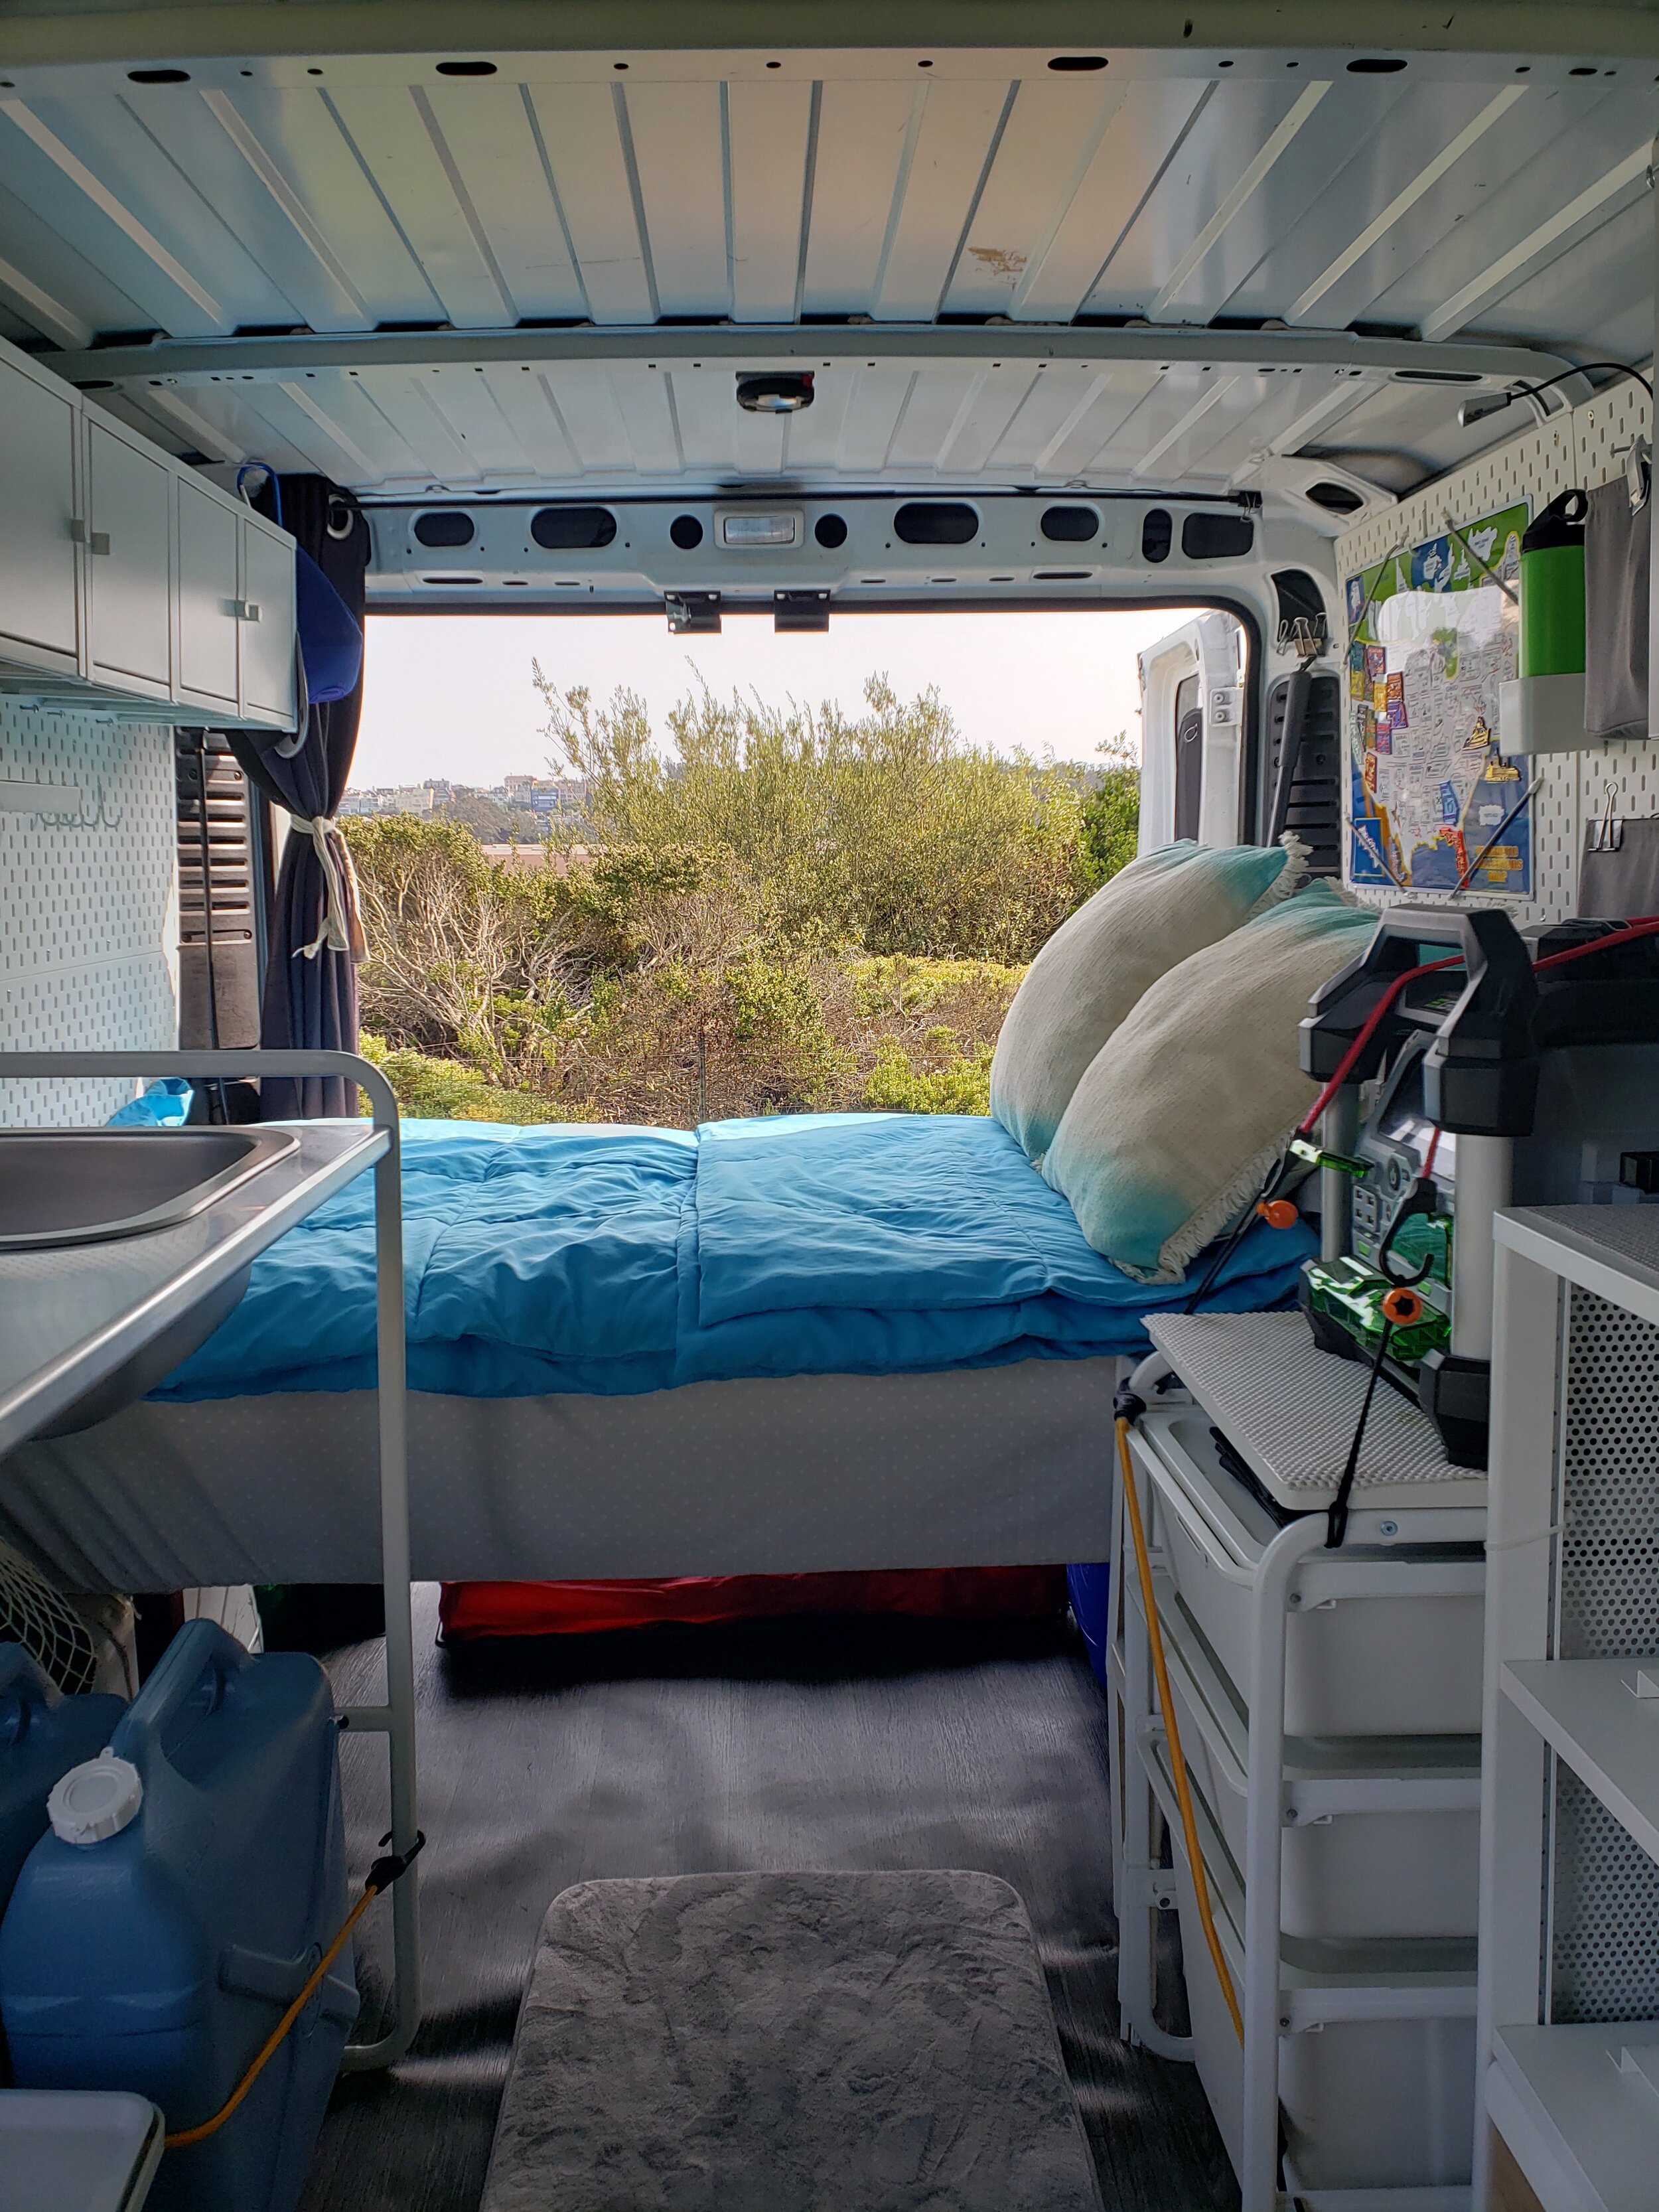 2020 Ikea Camper Van Conversion for 